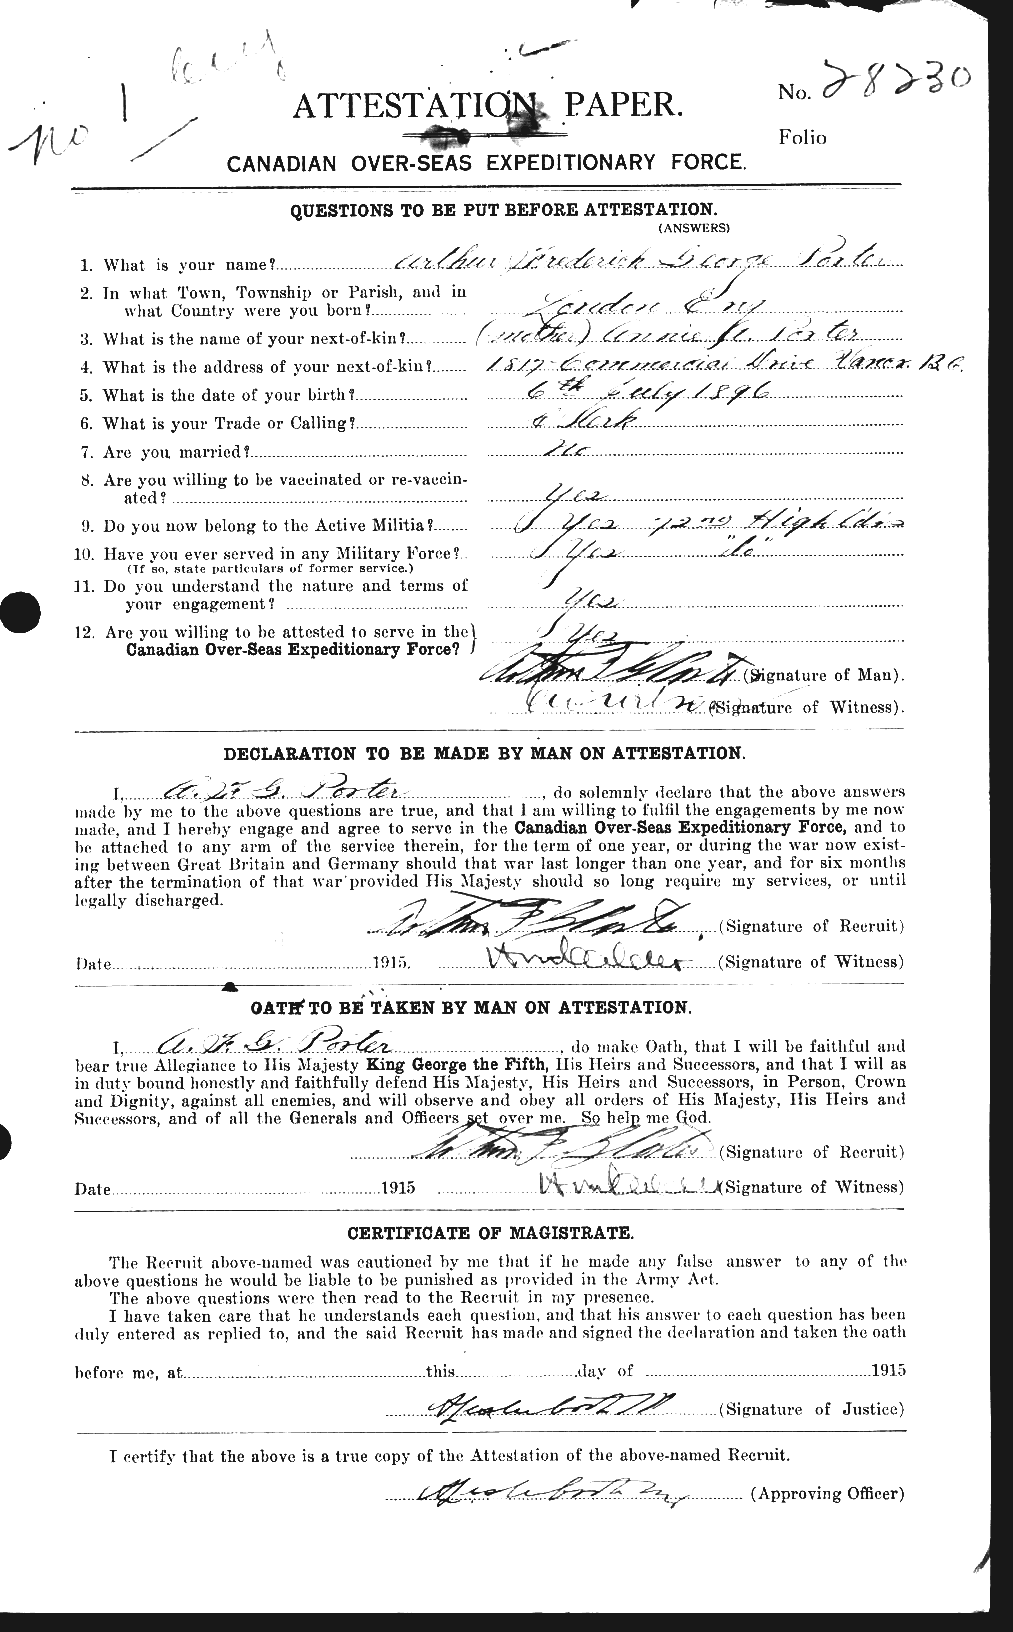 Dossiers du Personnel de la Première Guerre mondiale - CEC 581801a